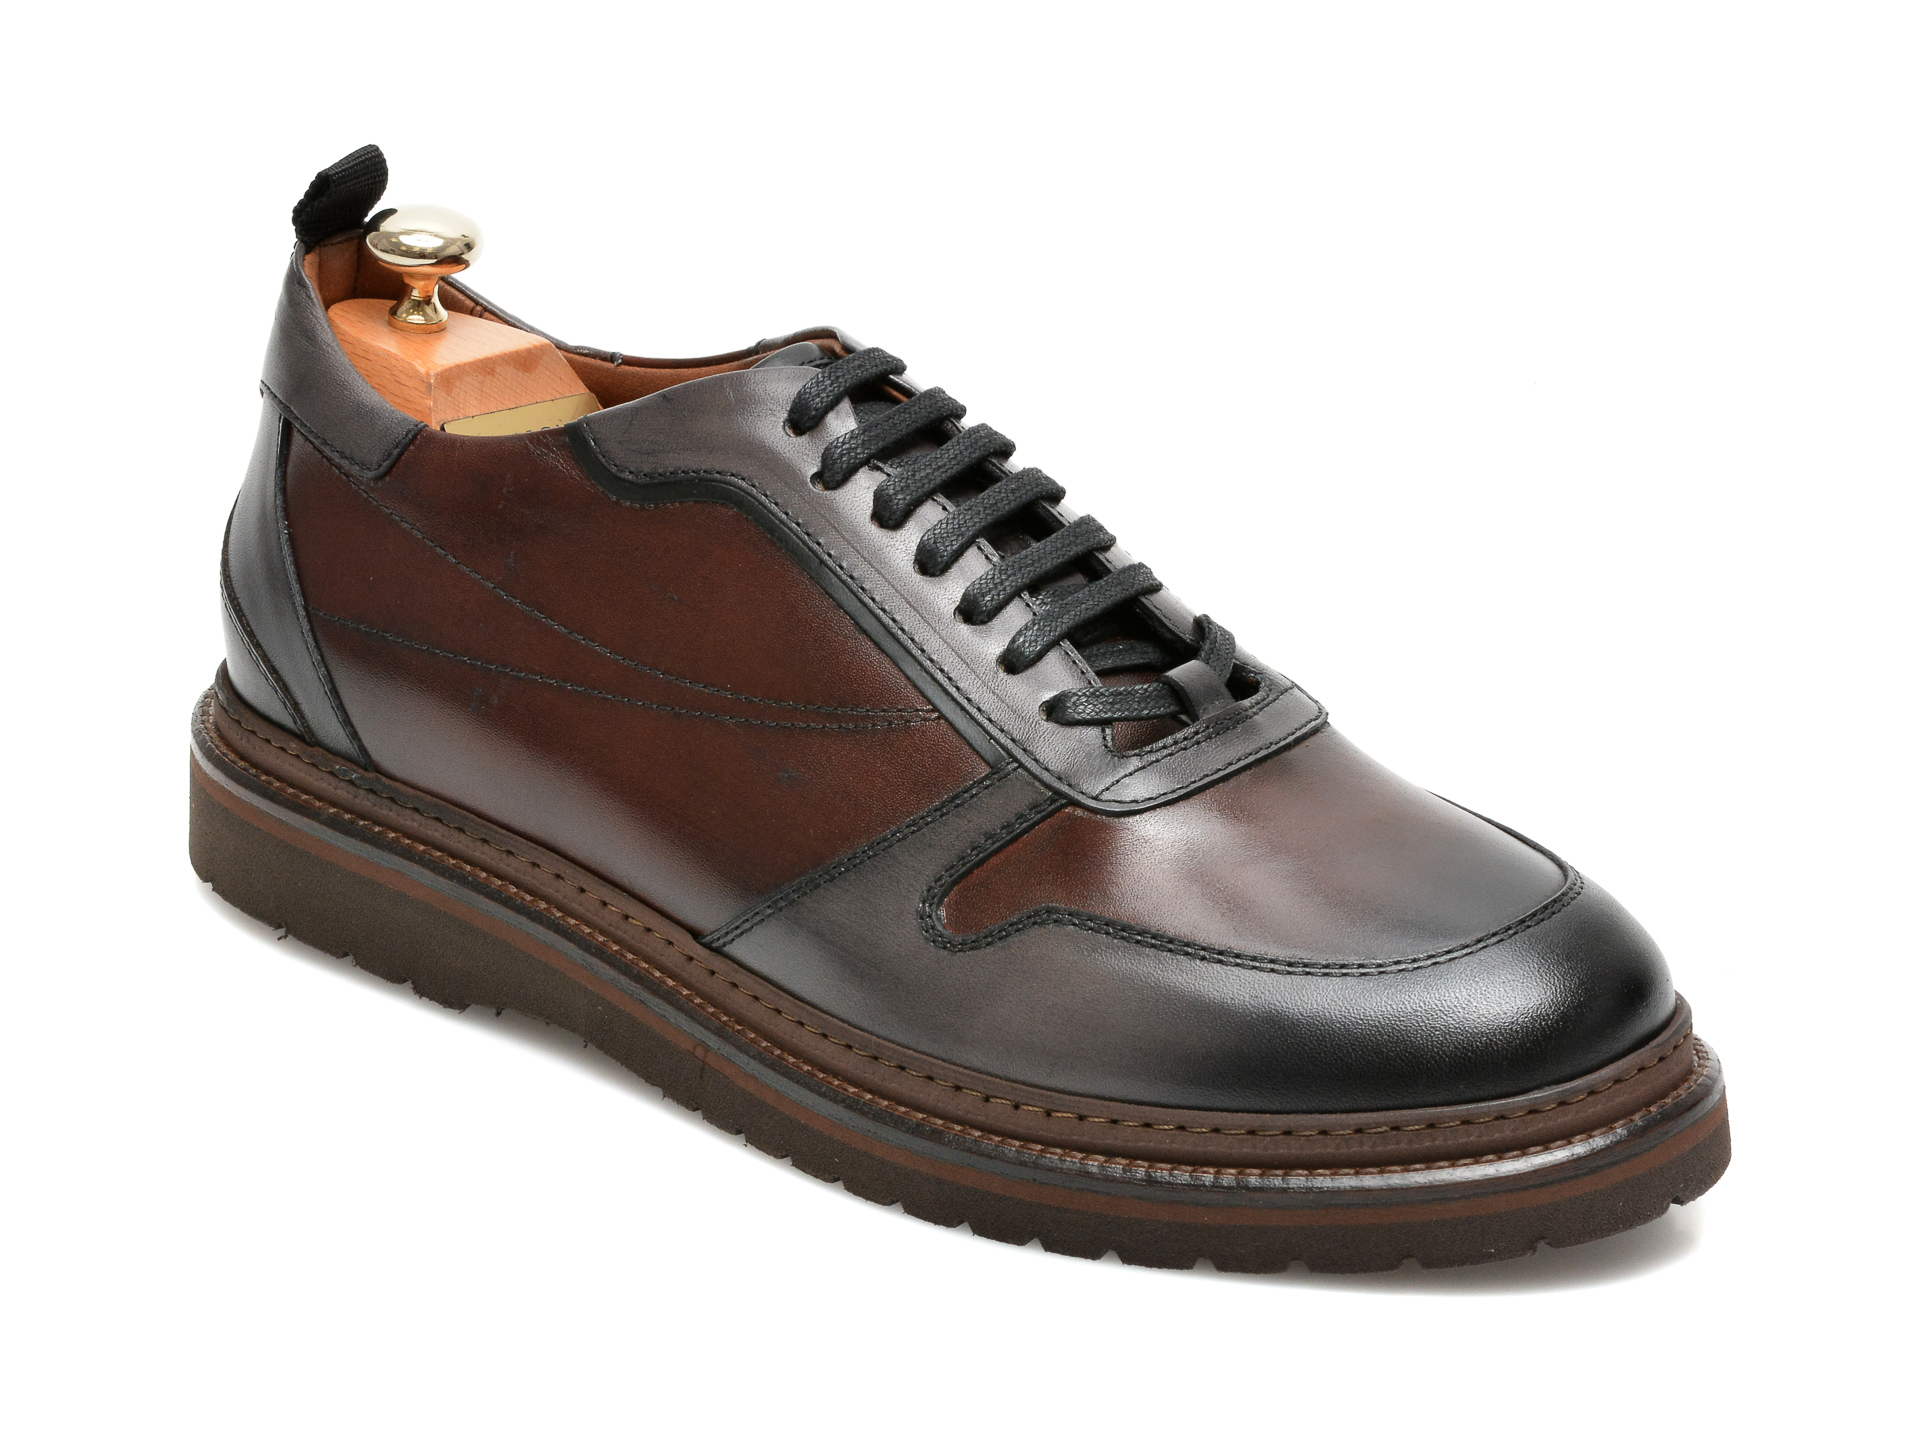 Pantofi LE COLONEL maro, 64804, din piele naturala Le Colonel imagine 2022 reducere